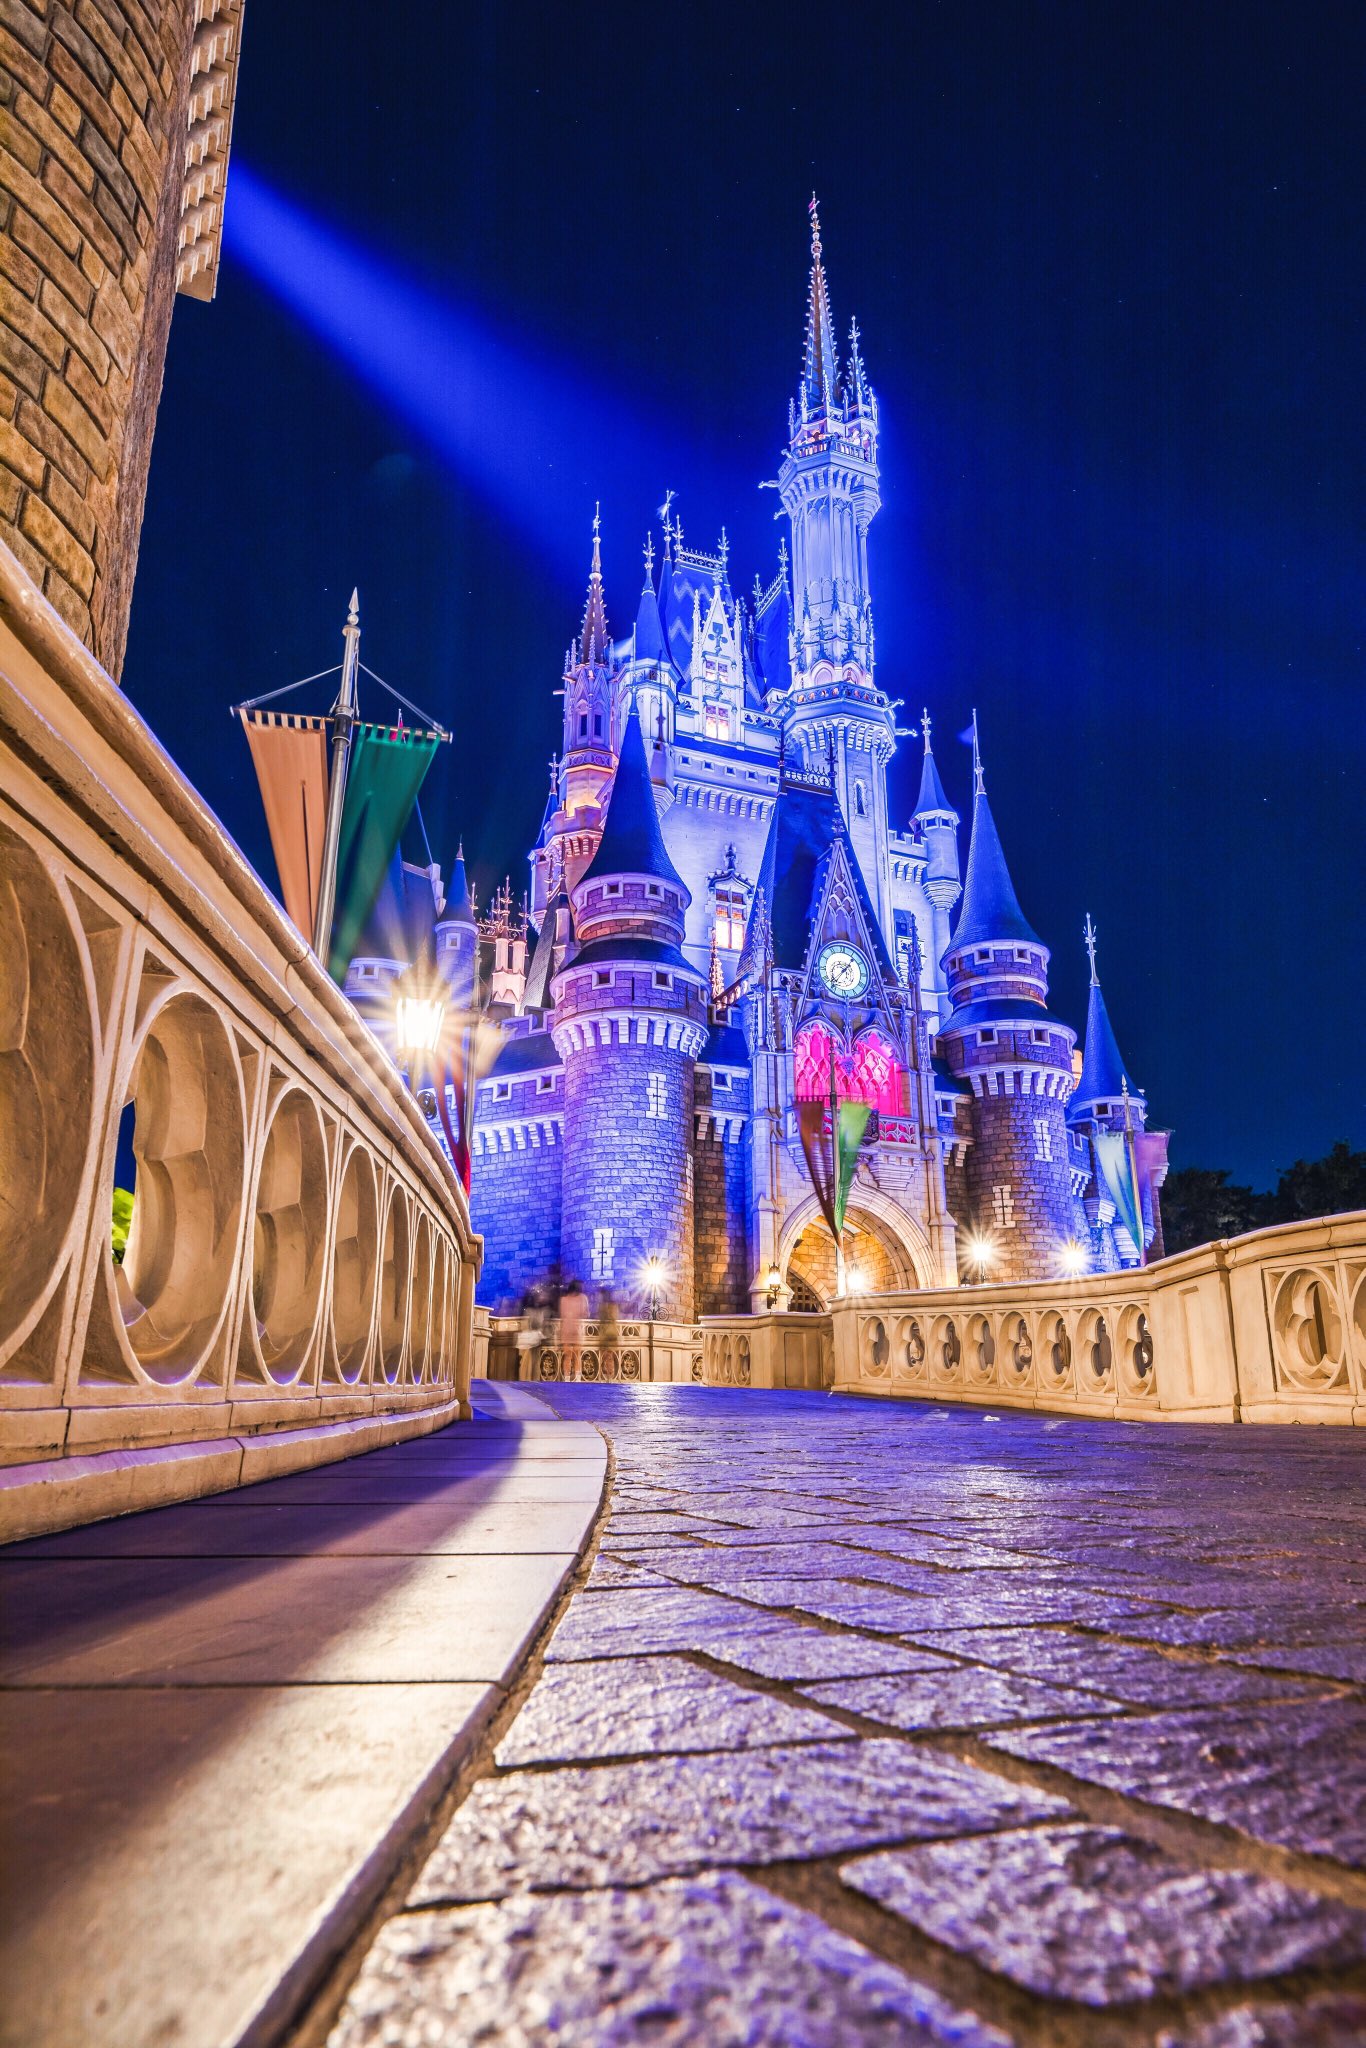 ひろカメラ 夜のシンデレラ城がアニメの世界 T Co Yz85joatx1 Twitter